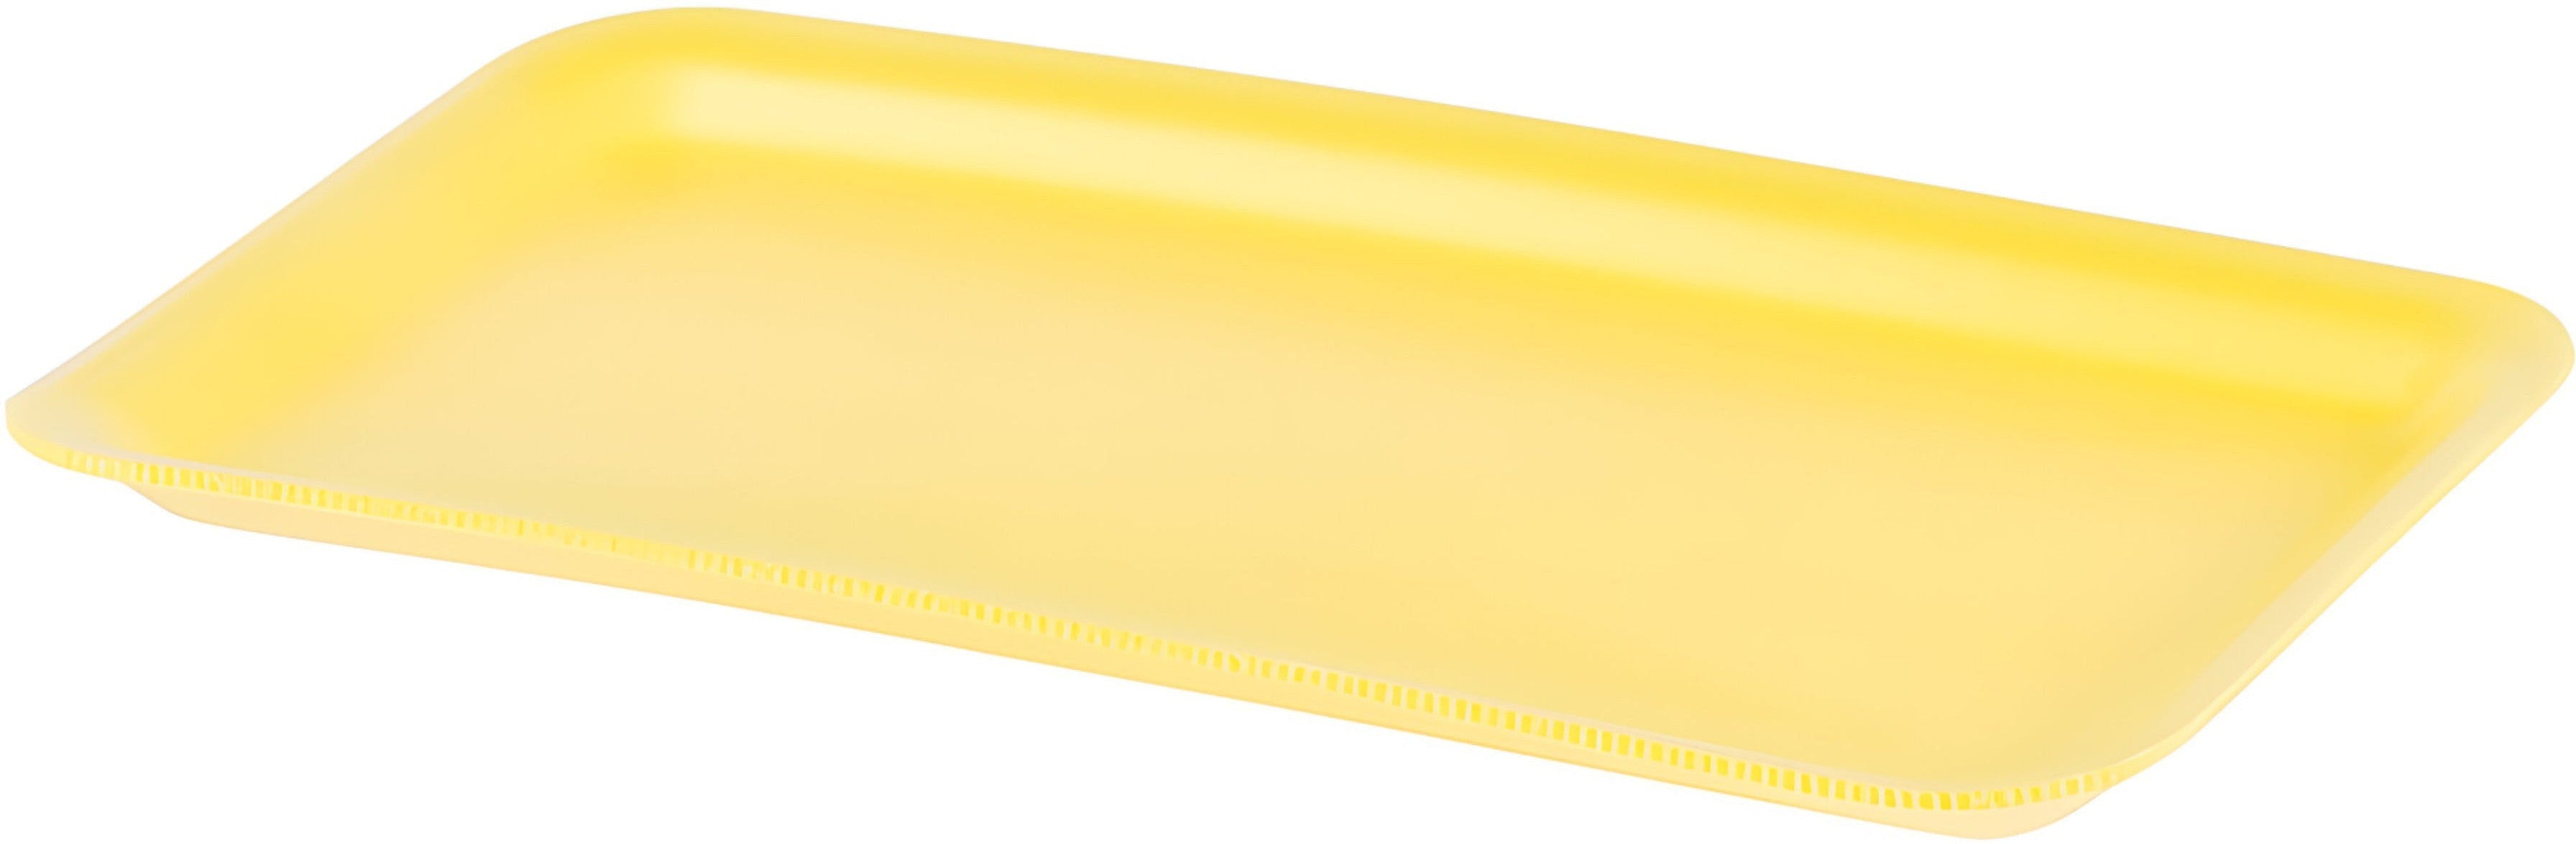 Dyne-A-Pak Inc. - 10.75" x 5.875" x 1.19" 10P Yellow Foam Meat Trays, 400/cs - 201010PY00